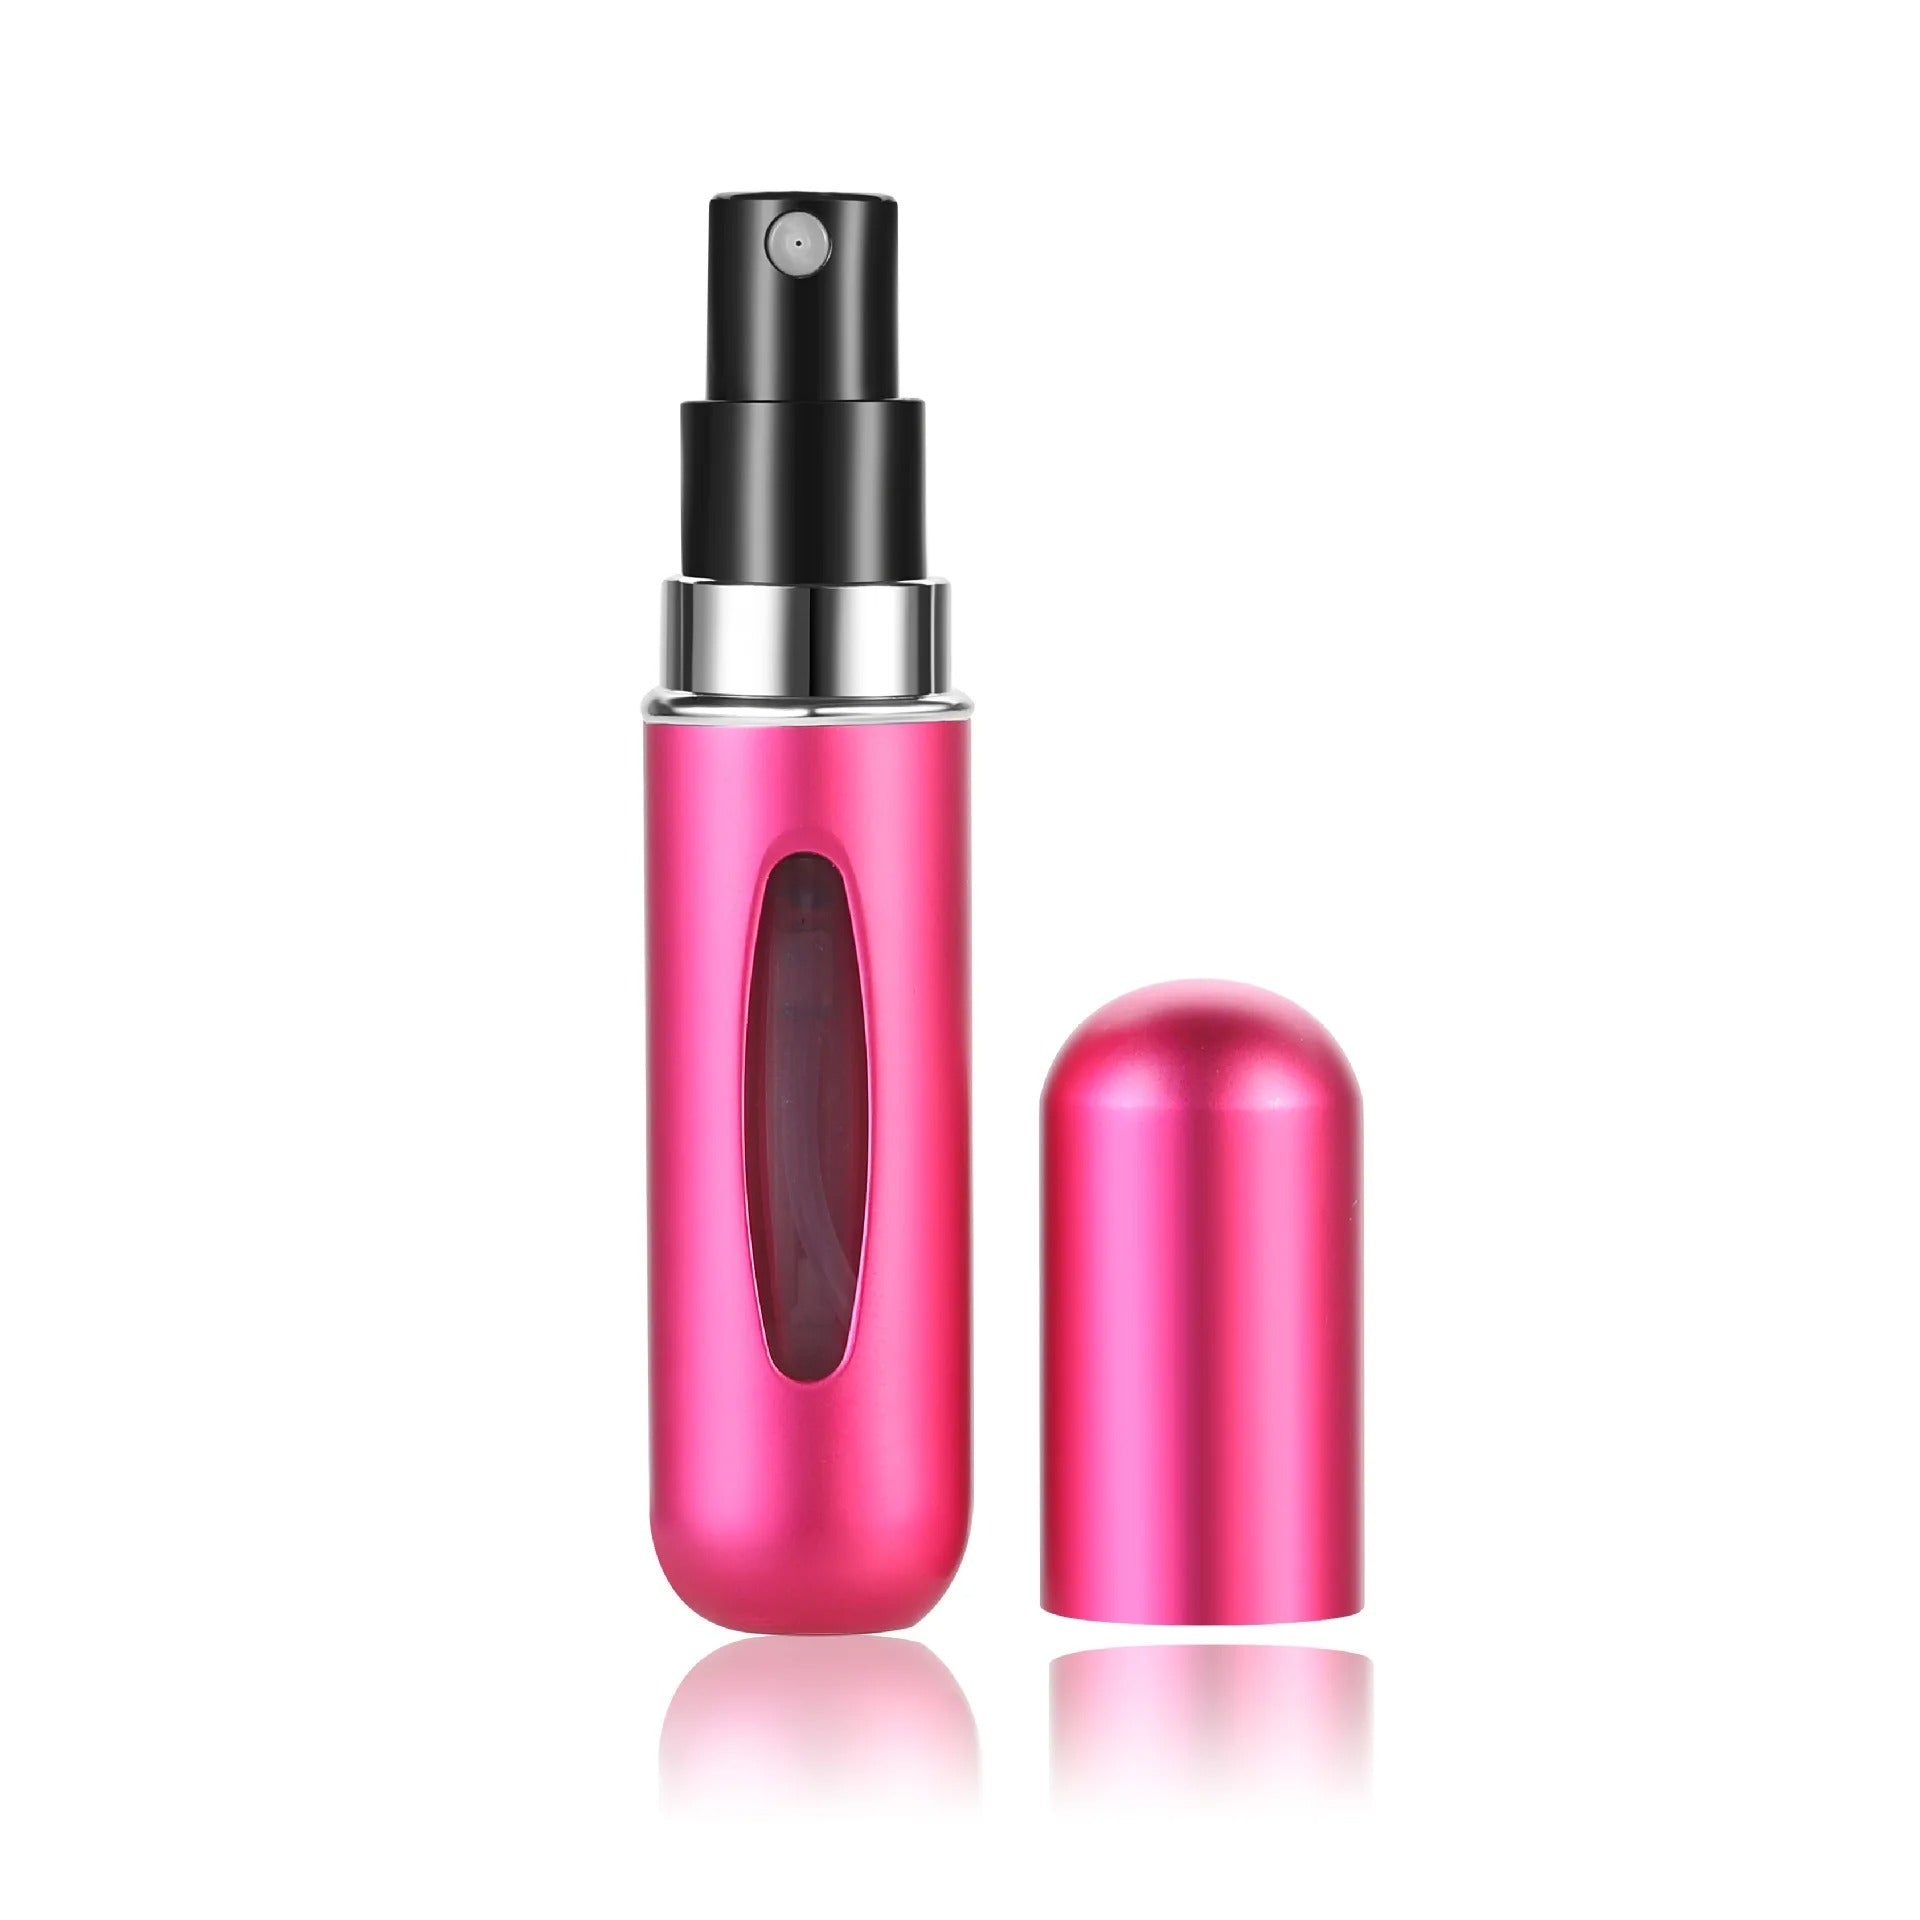 Portable Mini Refillable Perfume Automizer Bottle